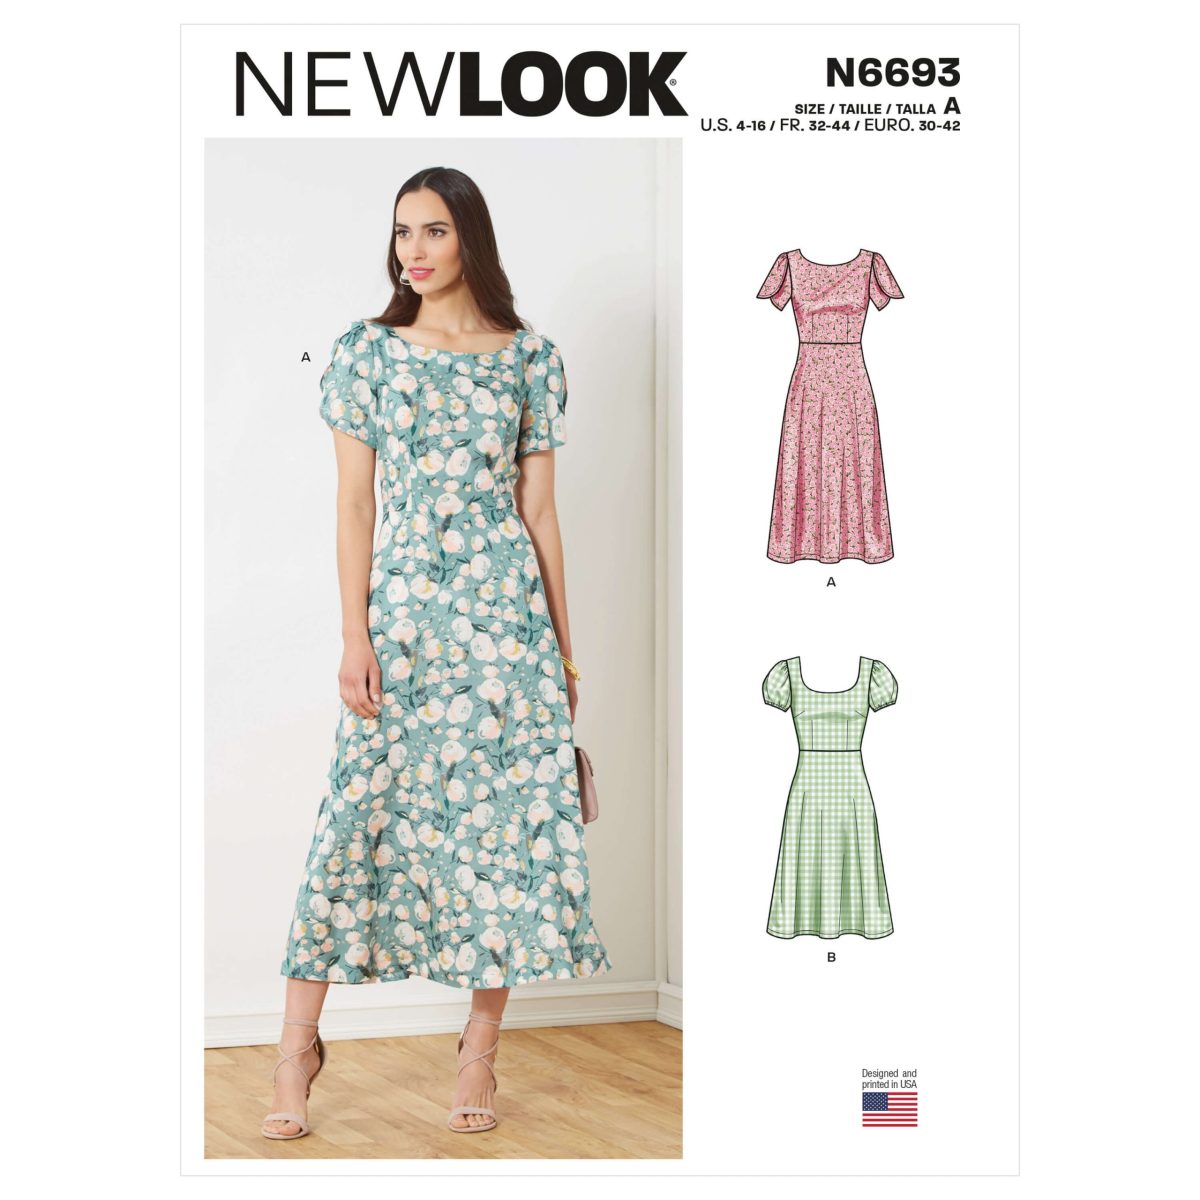 New Look Sewing Pattern N6693 Misses' Dresses